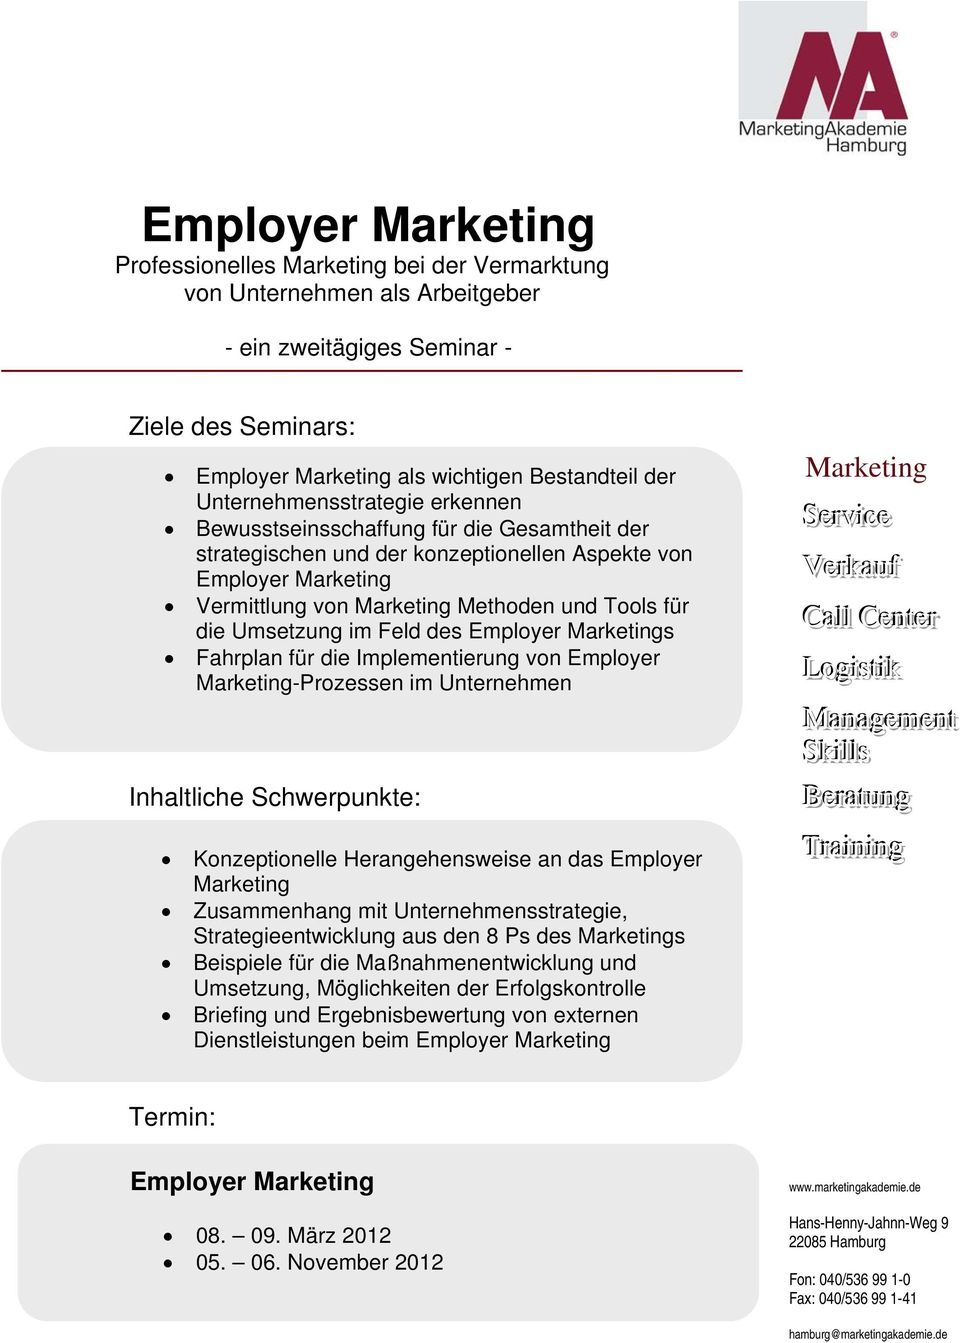 Employer Marketings Fahrplan für die Implementierung von Employer Marketing-Prozessen im Unternehmen Inhaltliche Schwerpunkte: Konzeptionelle Herangehensweise an das Employer Marketing Zusammenhang